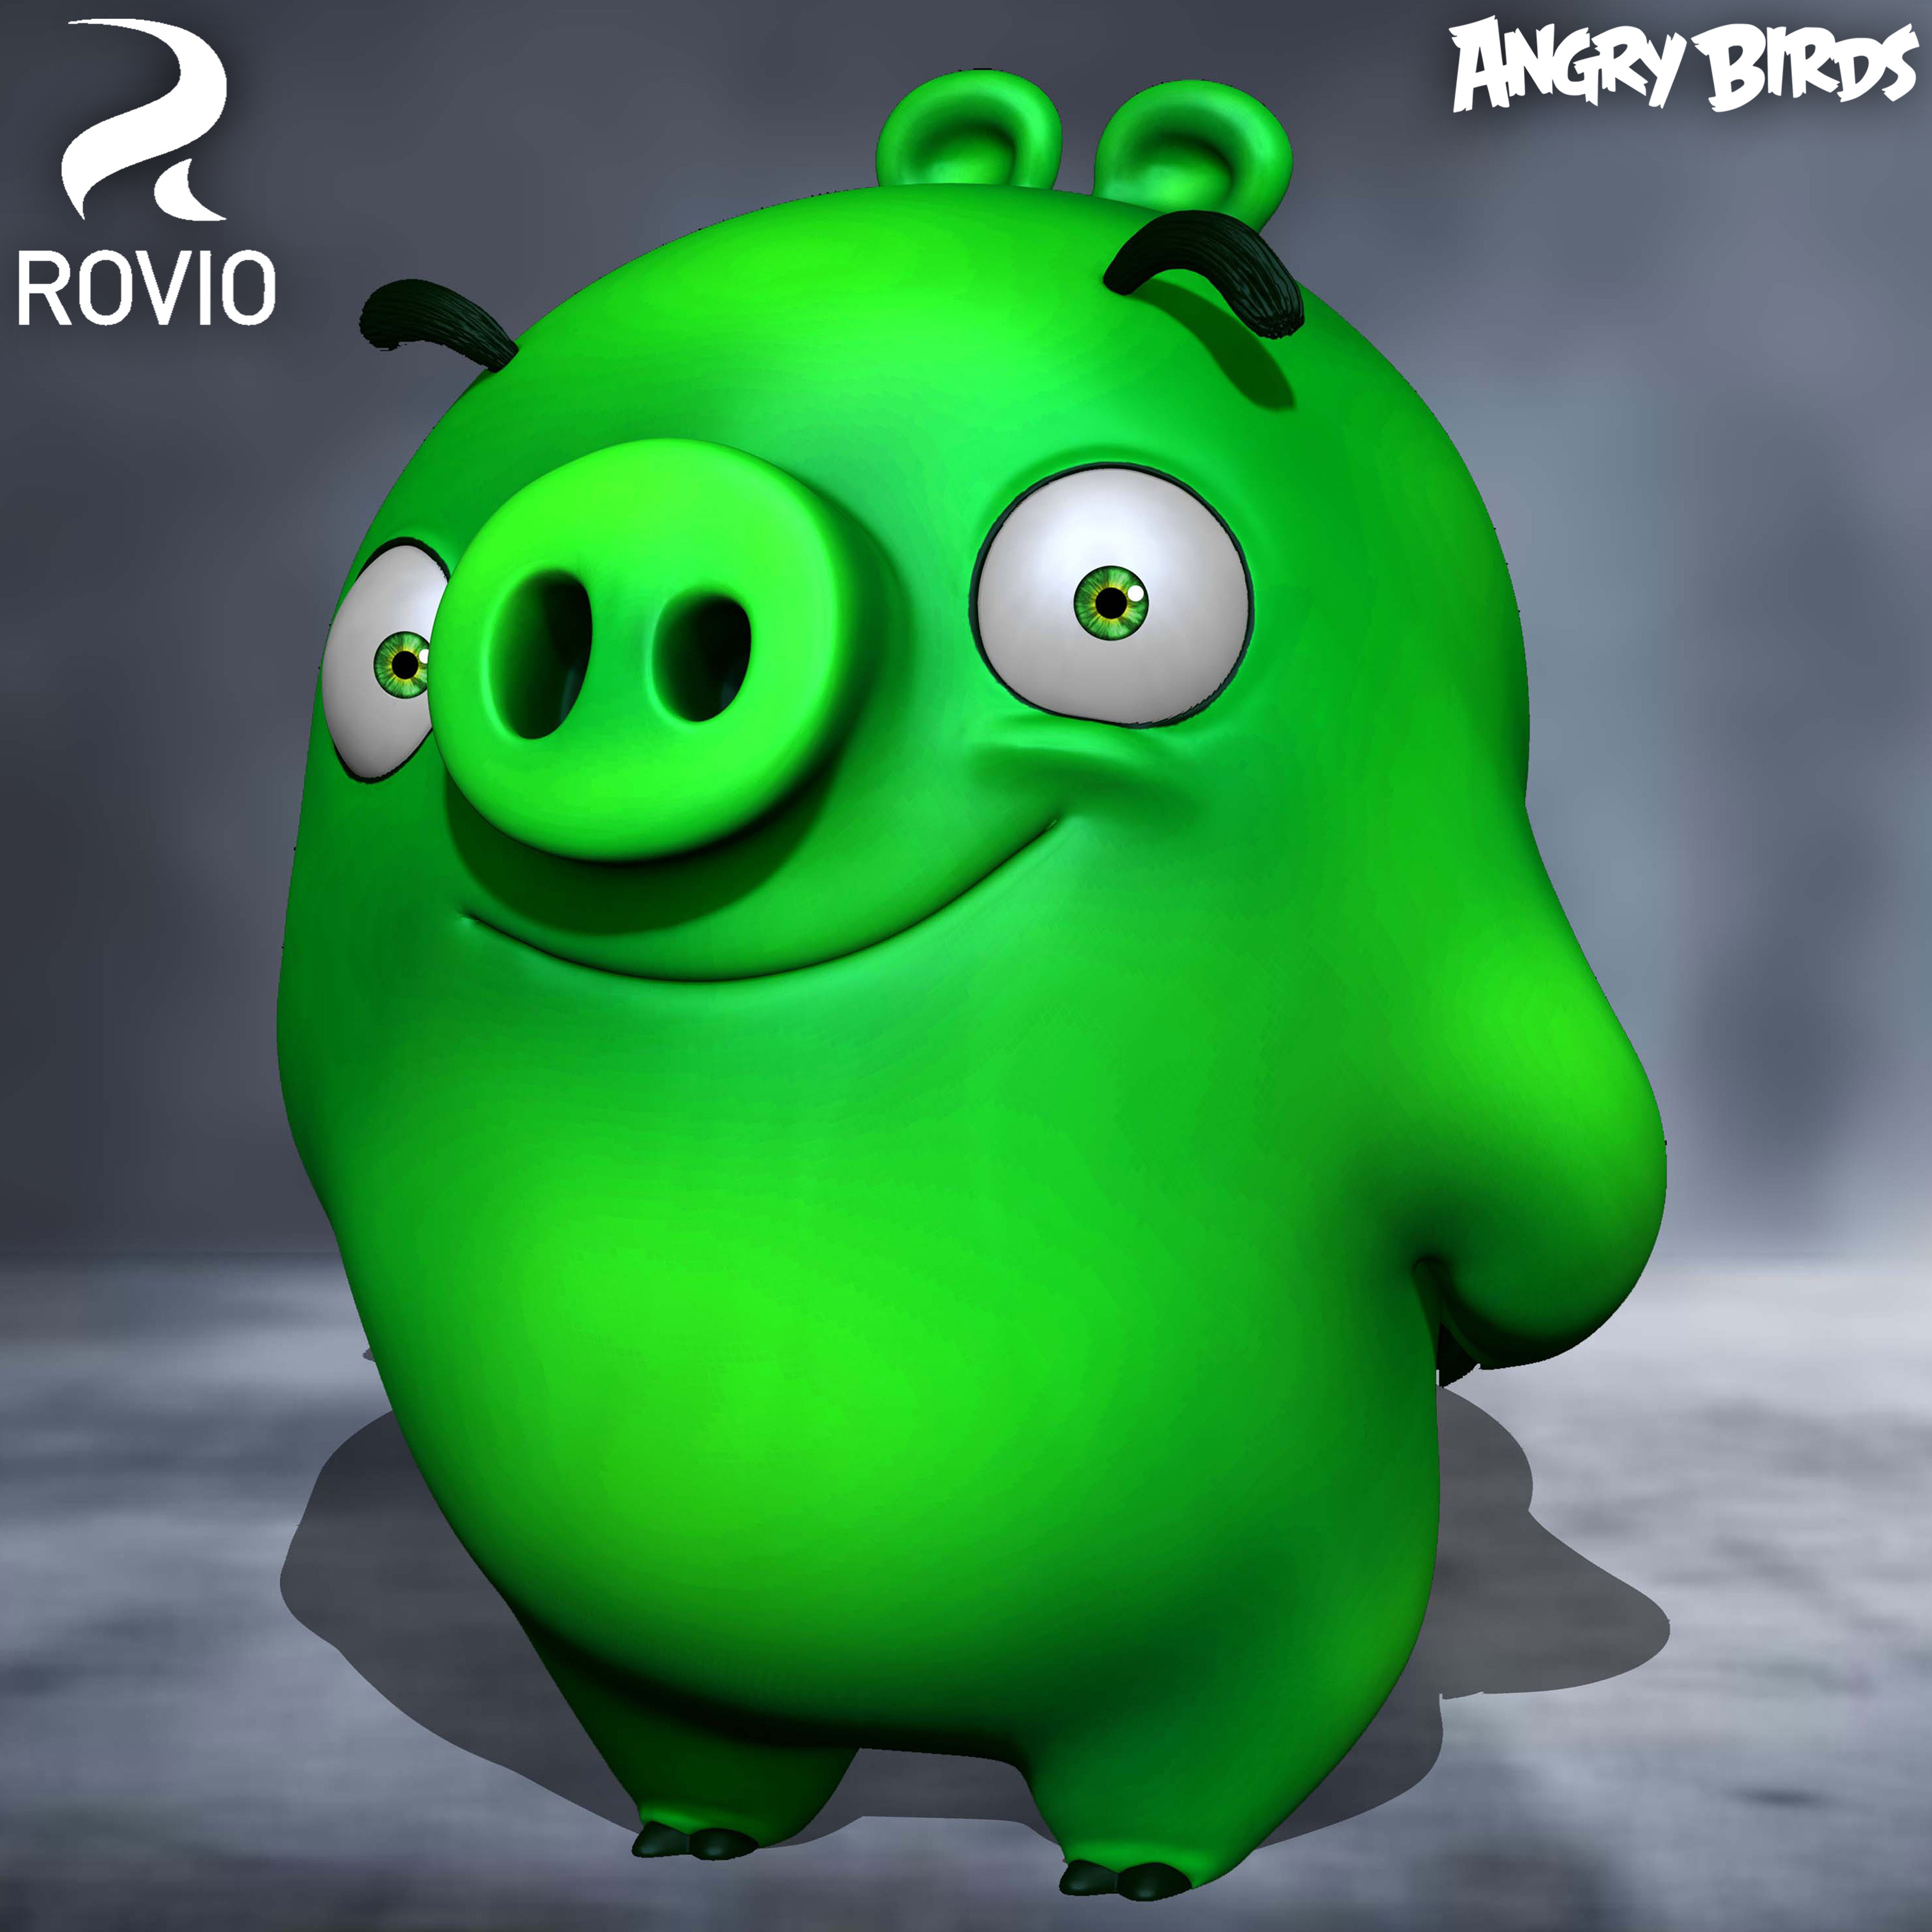 Pigs Angry Birds Rovio Entertainment Pose sculpted By Yacine BRINIS 001